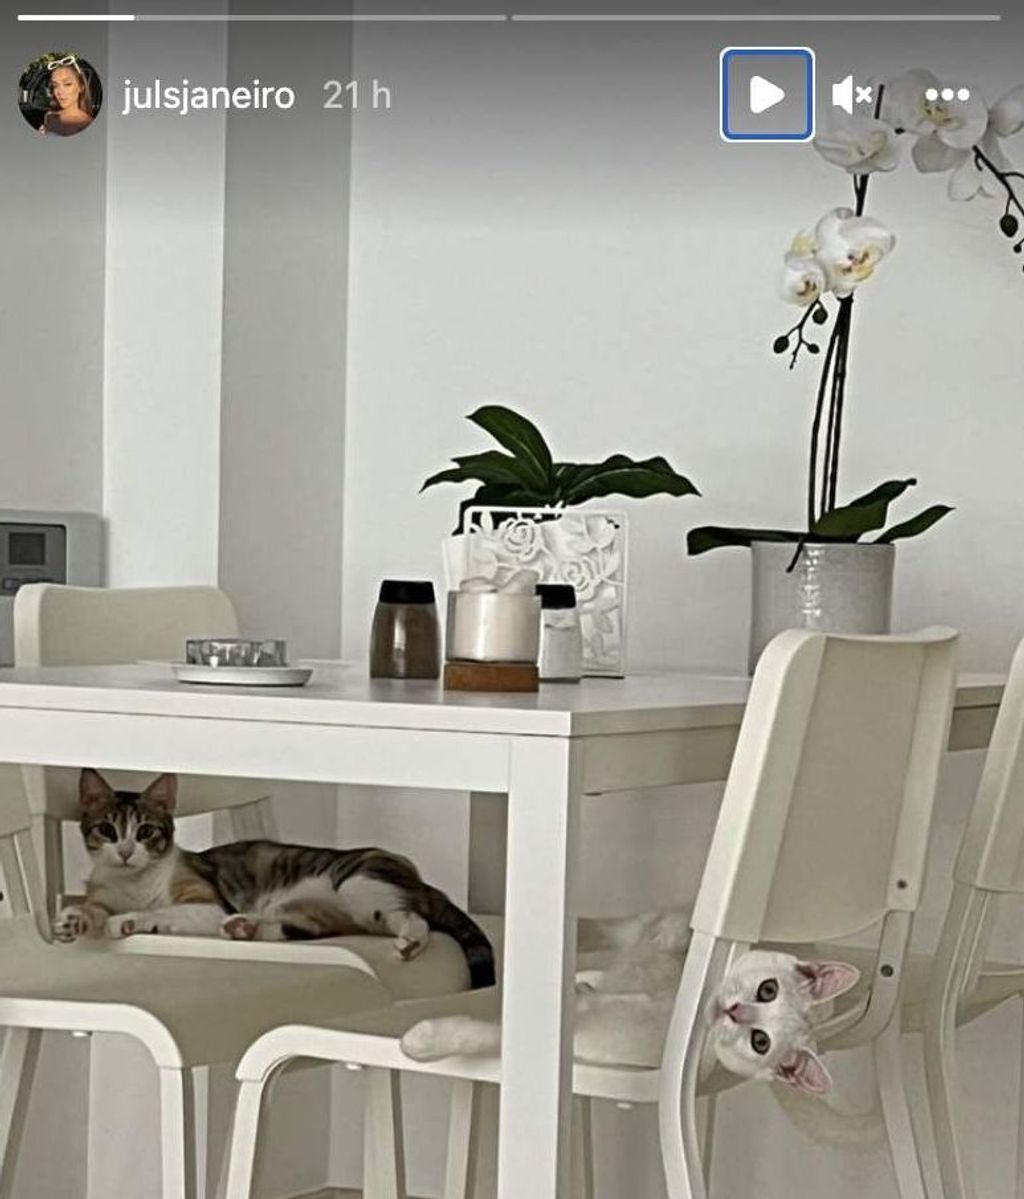 Julia Janeiro comparte cómo es el salón de su casa en Madrid